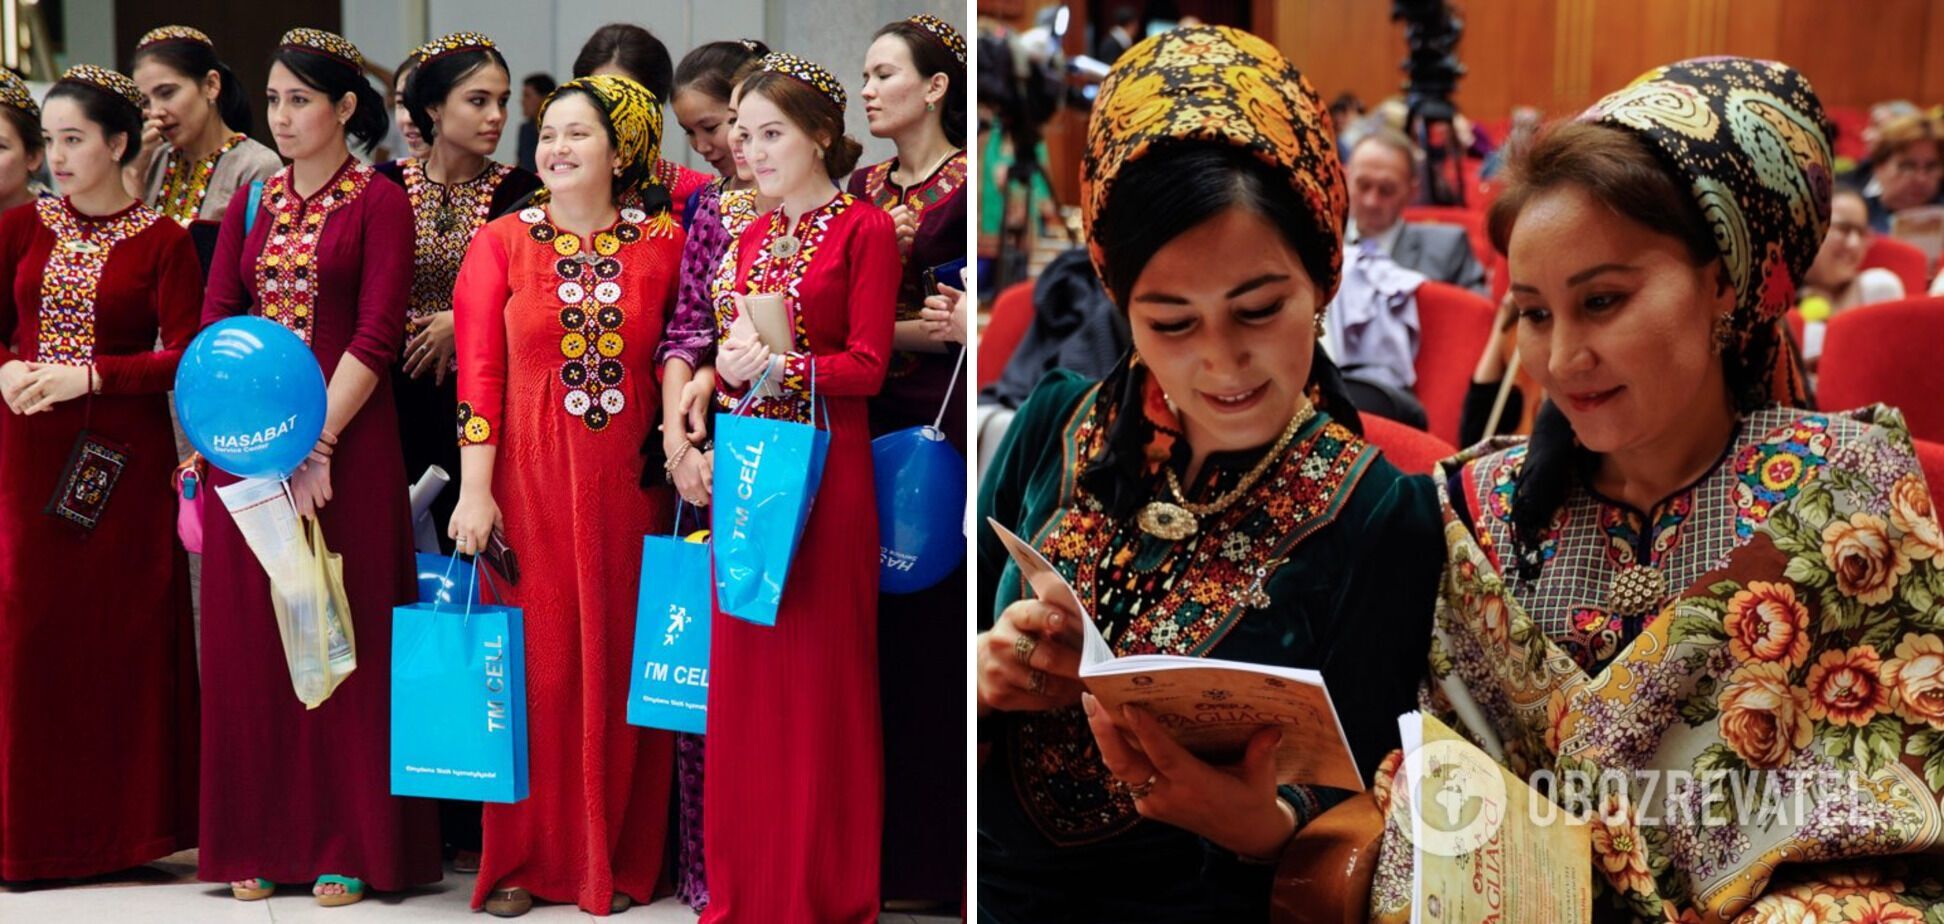 Побои за красоту и штрафы за "неправильное" белье: как в Туркменистане ограничивают права женщин 